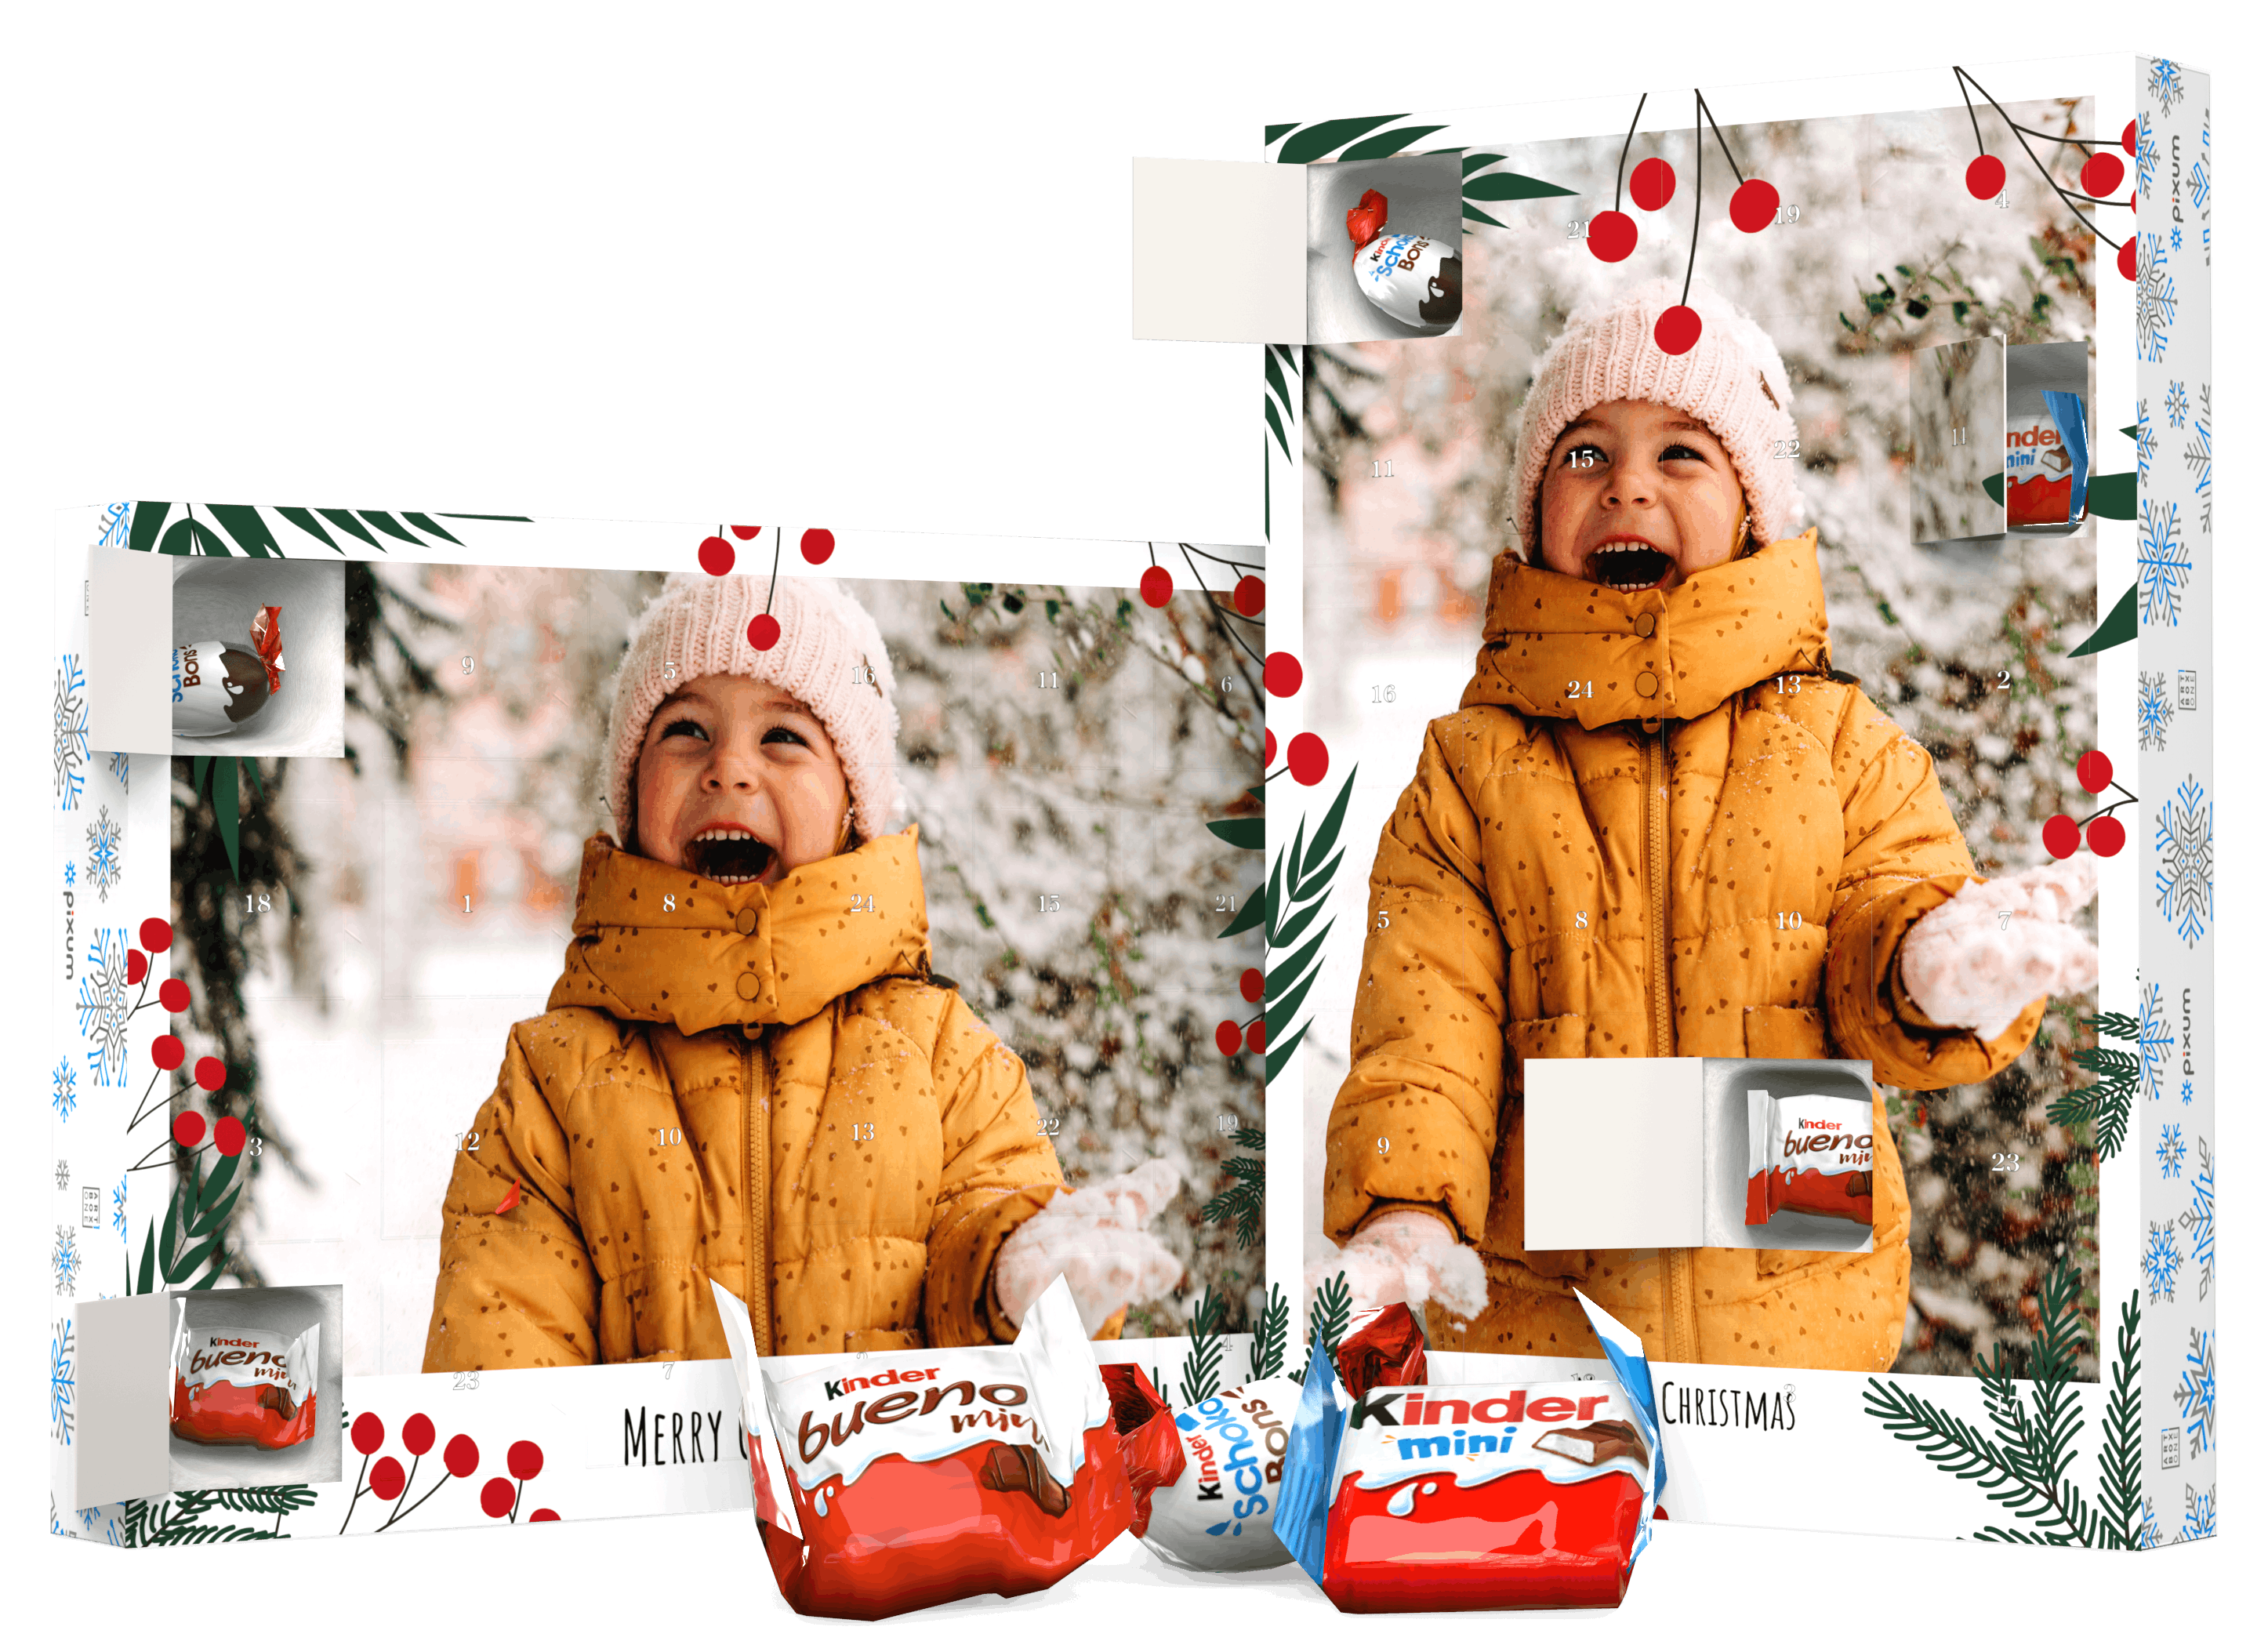 Calendrier de l'Avent kinder personnalisé avec une photo d'une petite fille dans la neige